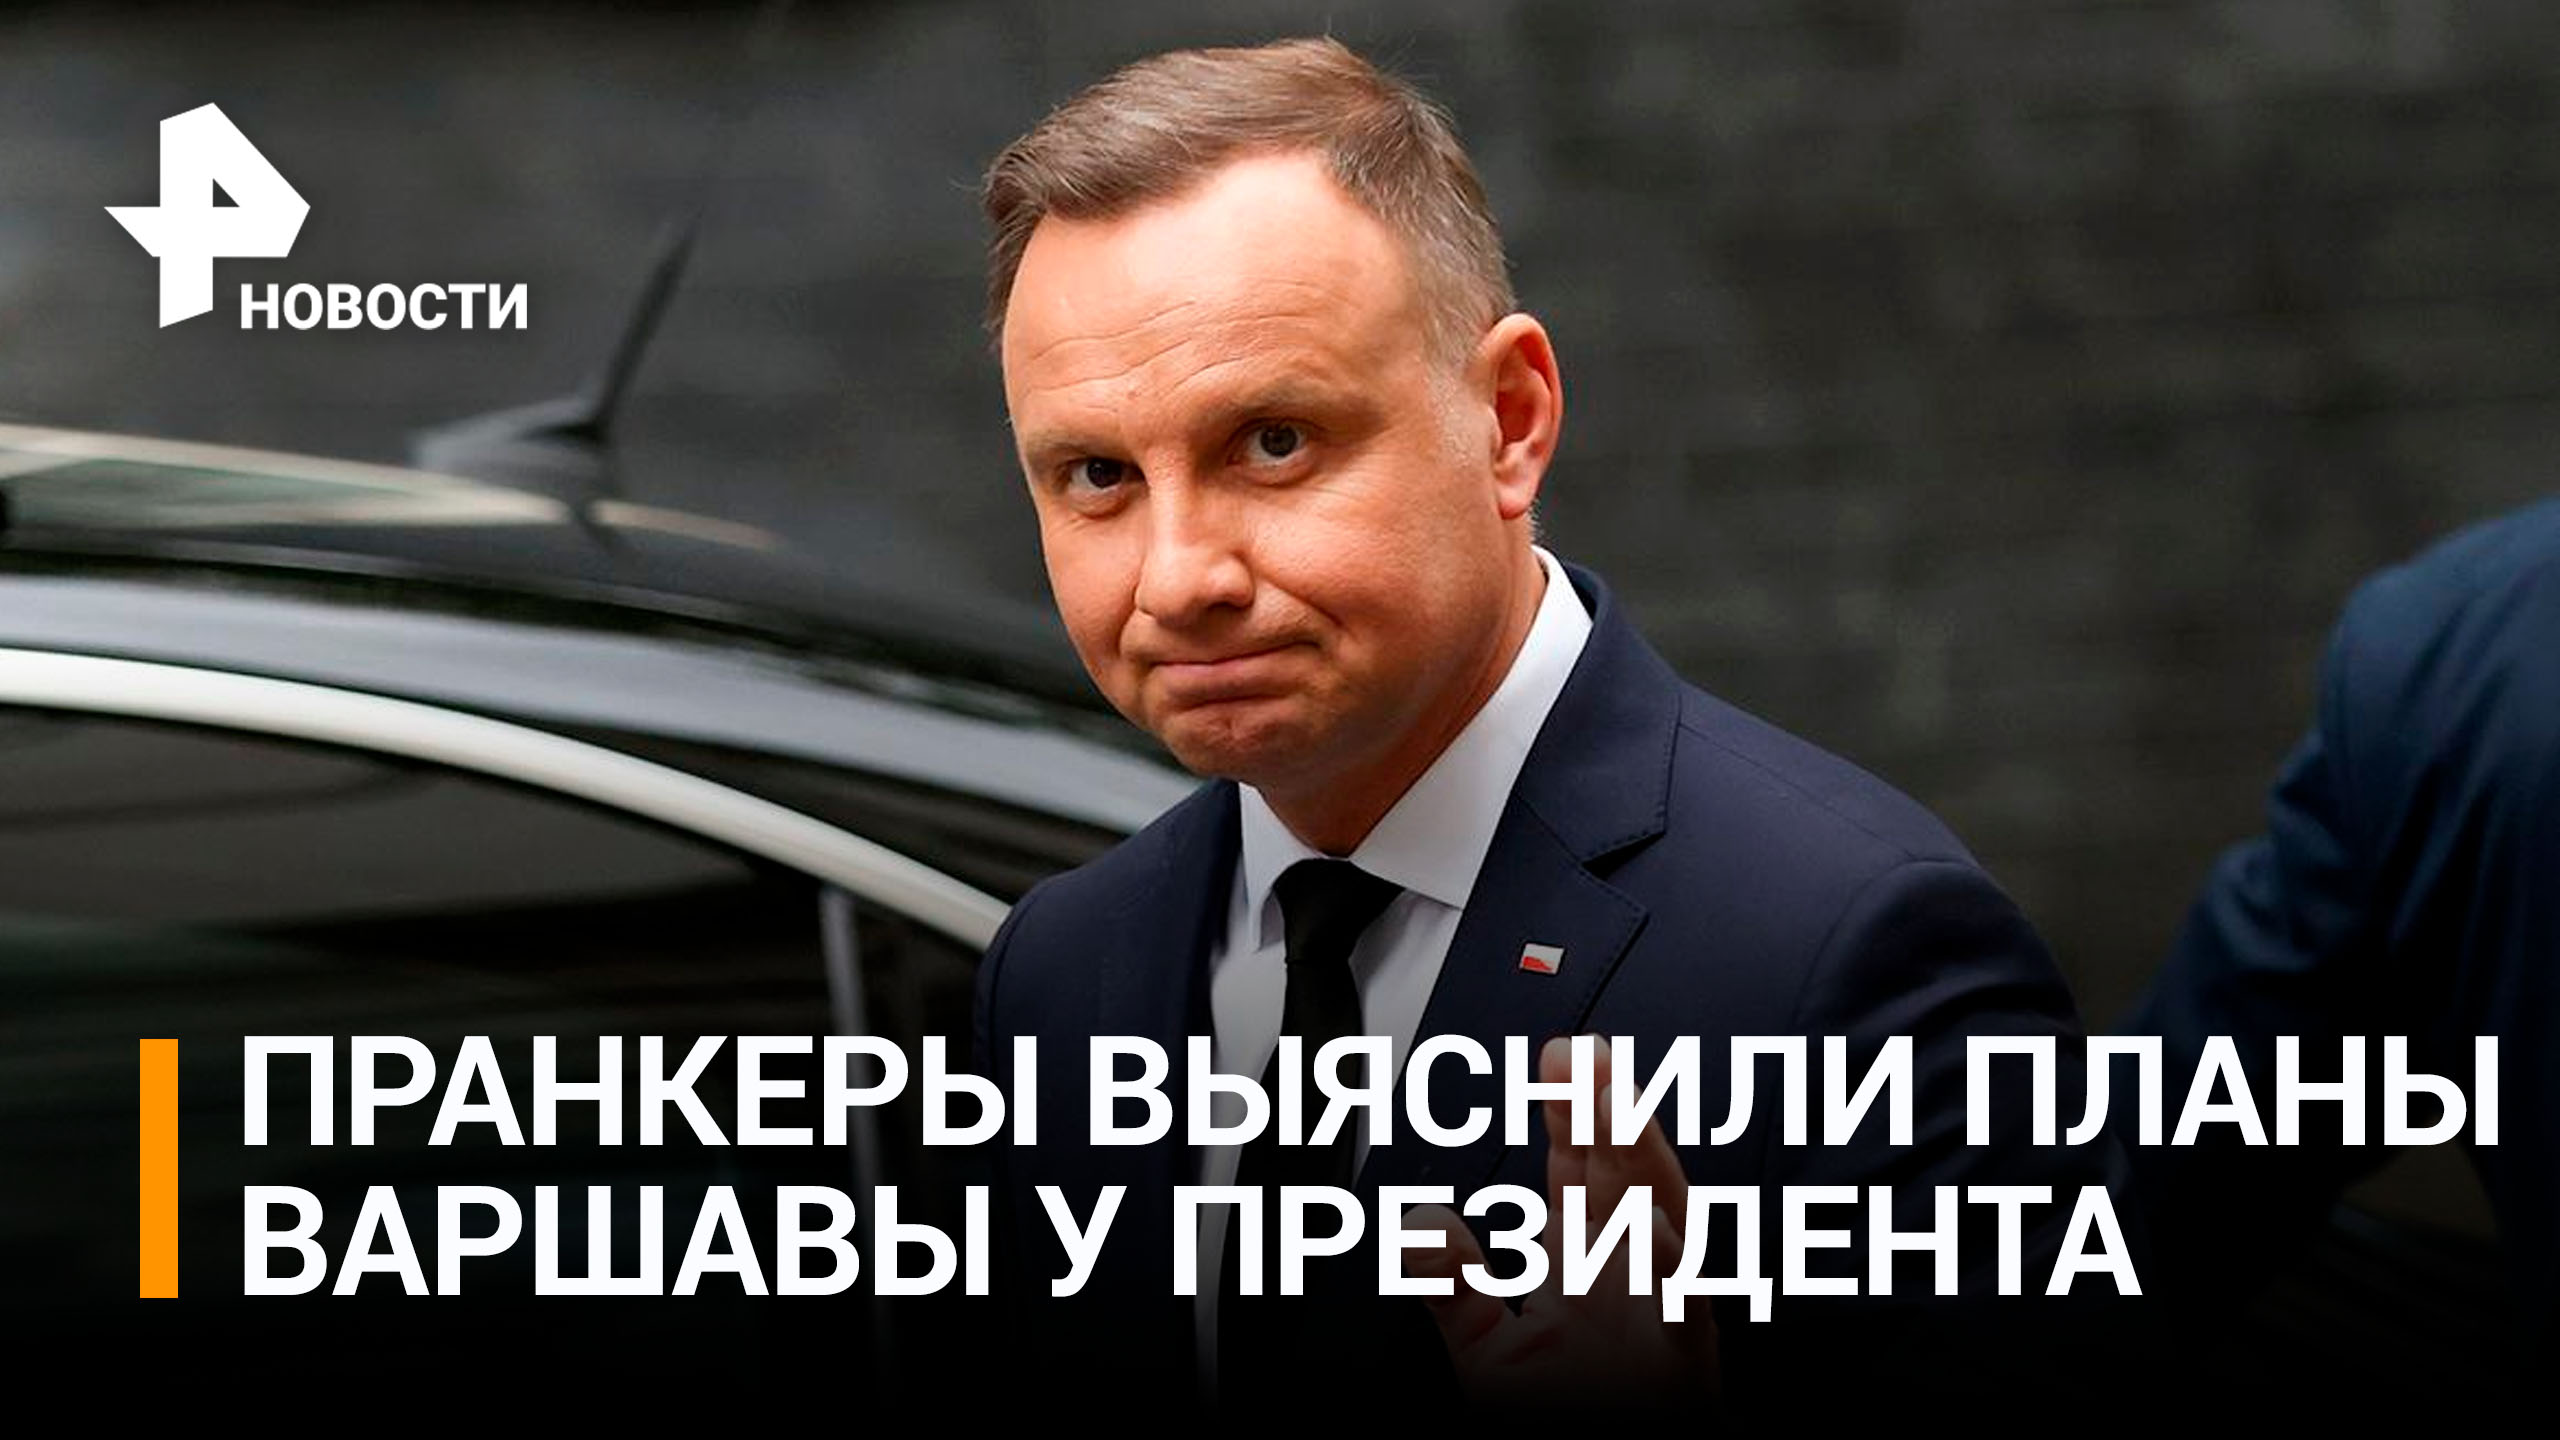 Президент Польши Дуда заявил пранкерам, что не хочет "войны" с Россией / РЕН Новости